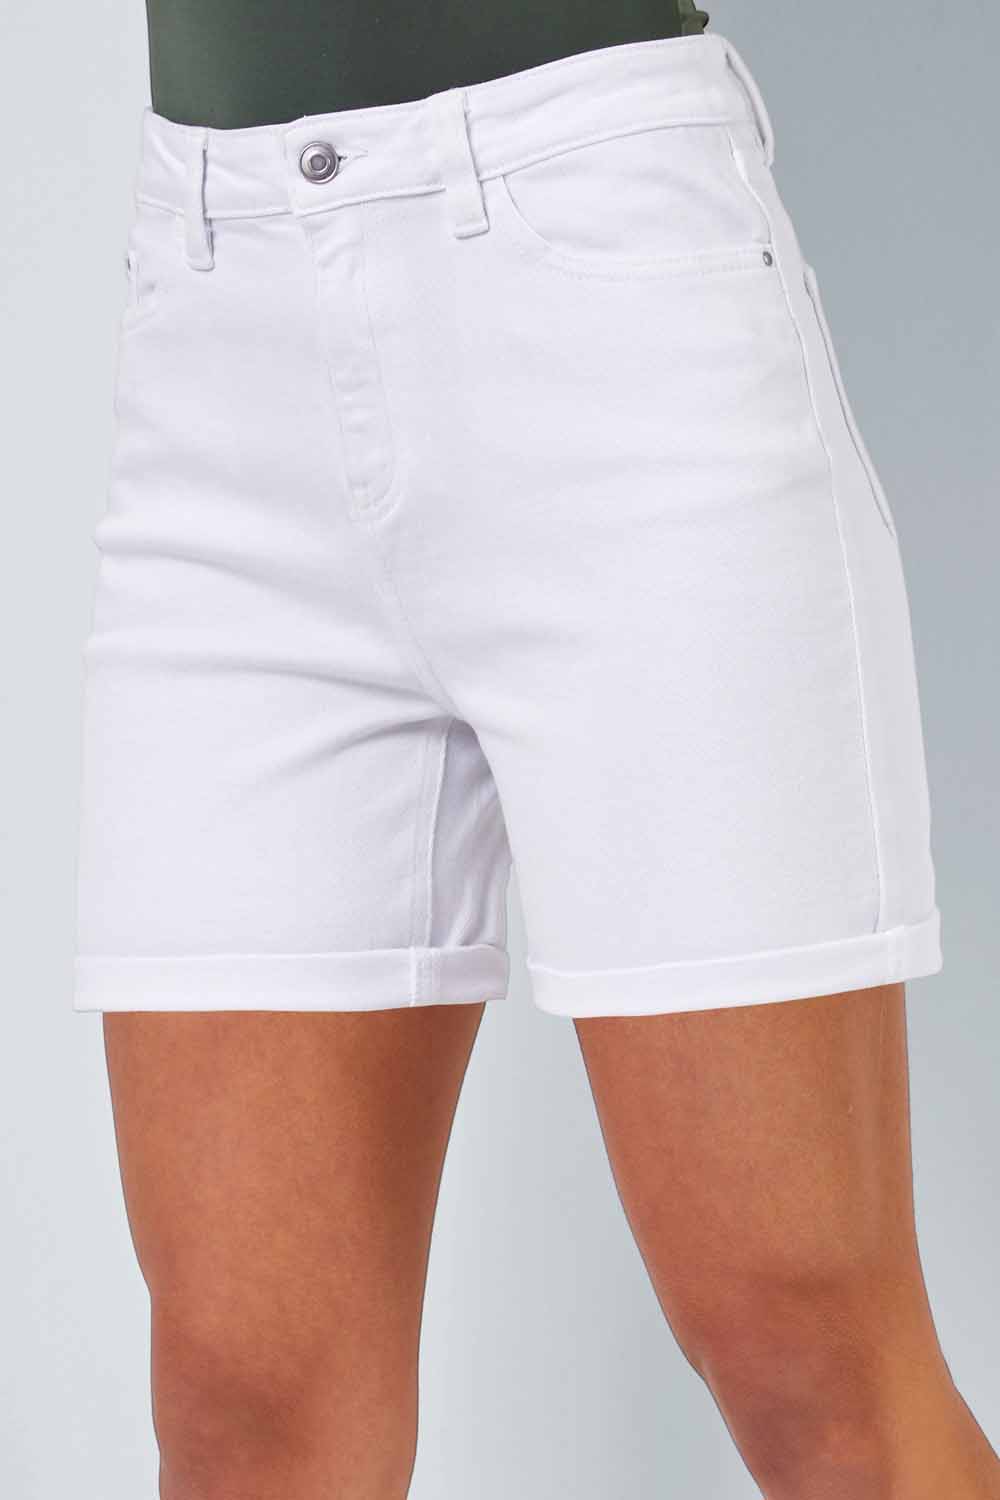 Denim Shorts | High waisted shorts denim, Distressed high waisted shorts, High  waisted shorts